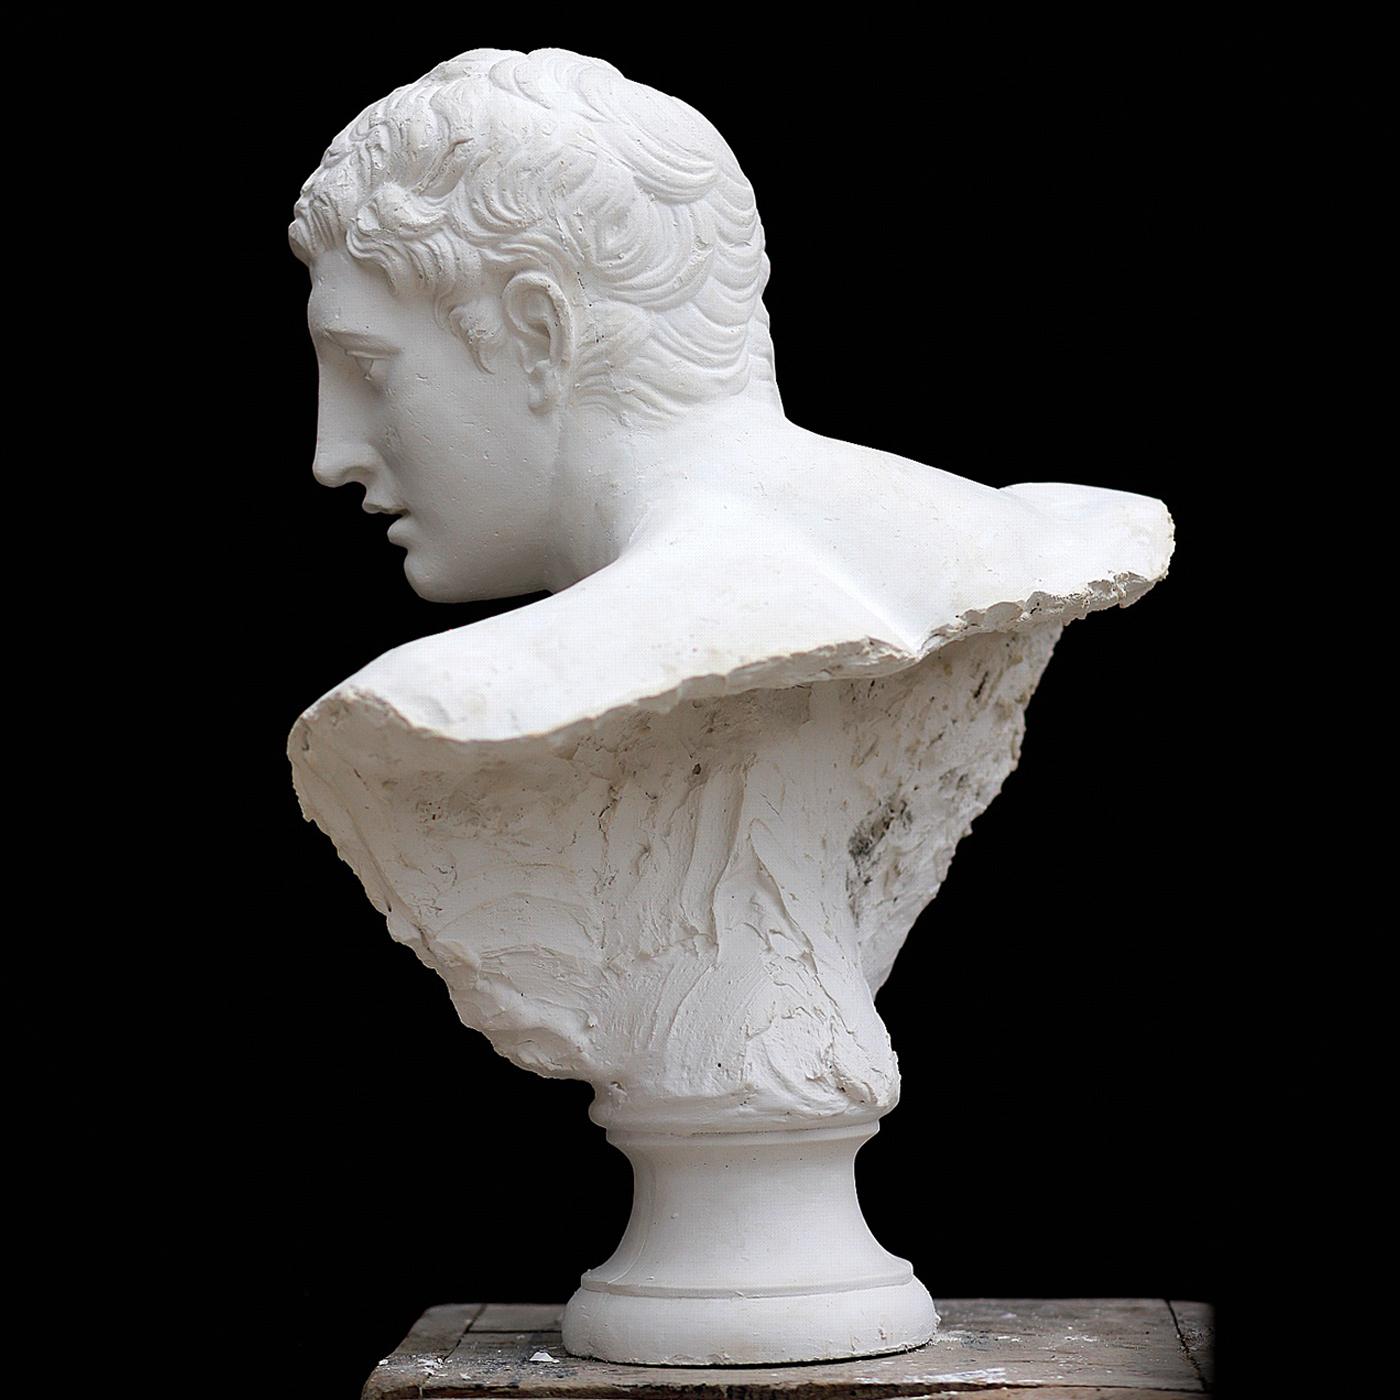 Ce buste exquis est une représentation exacte du visage du Discobole, la célèbre sculpture grecque dont les célèbres copies romaines sont conservées au National British Museum et au Museo Nazionale Romano. Sculpté à la main par les artistes du